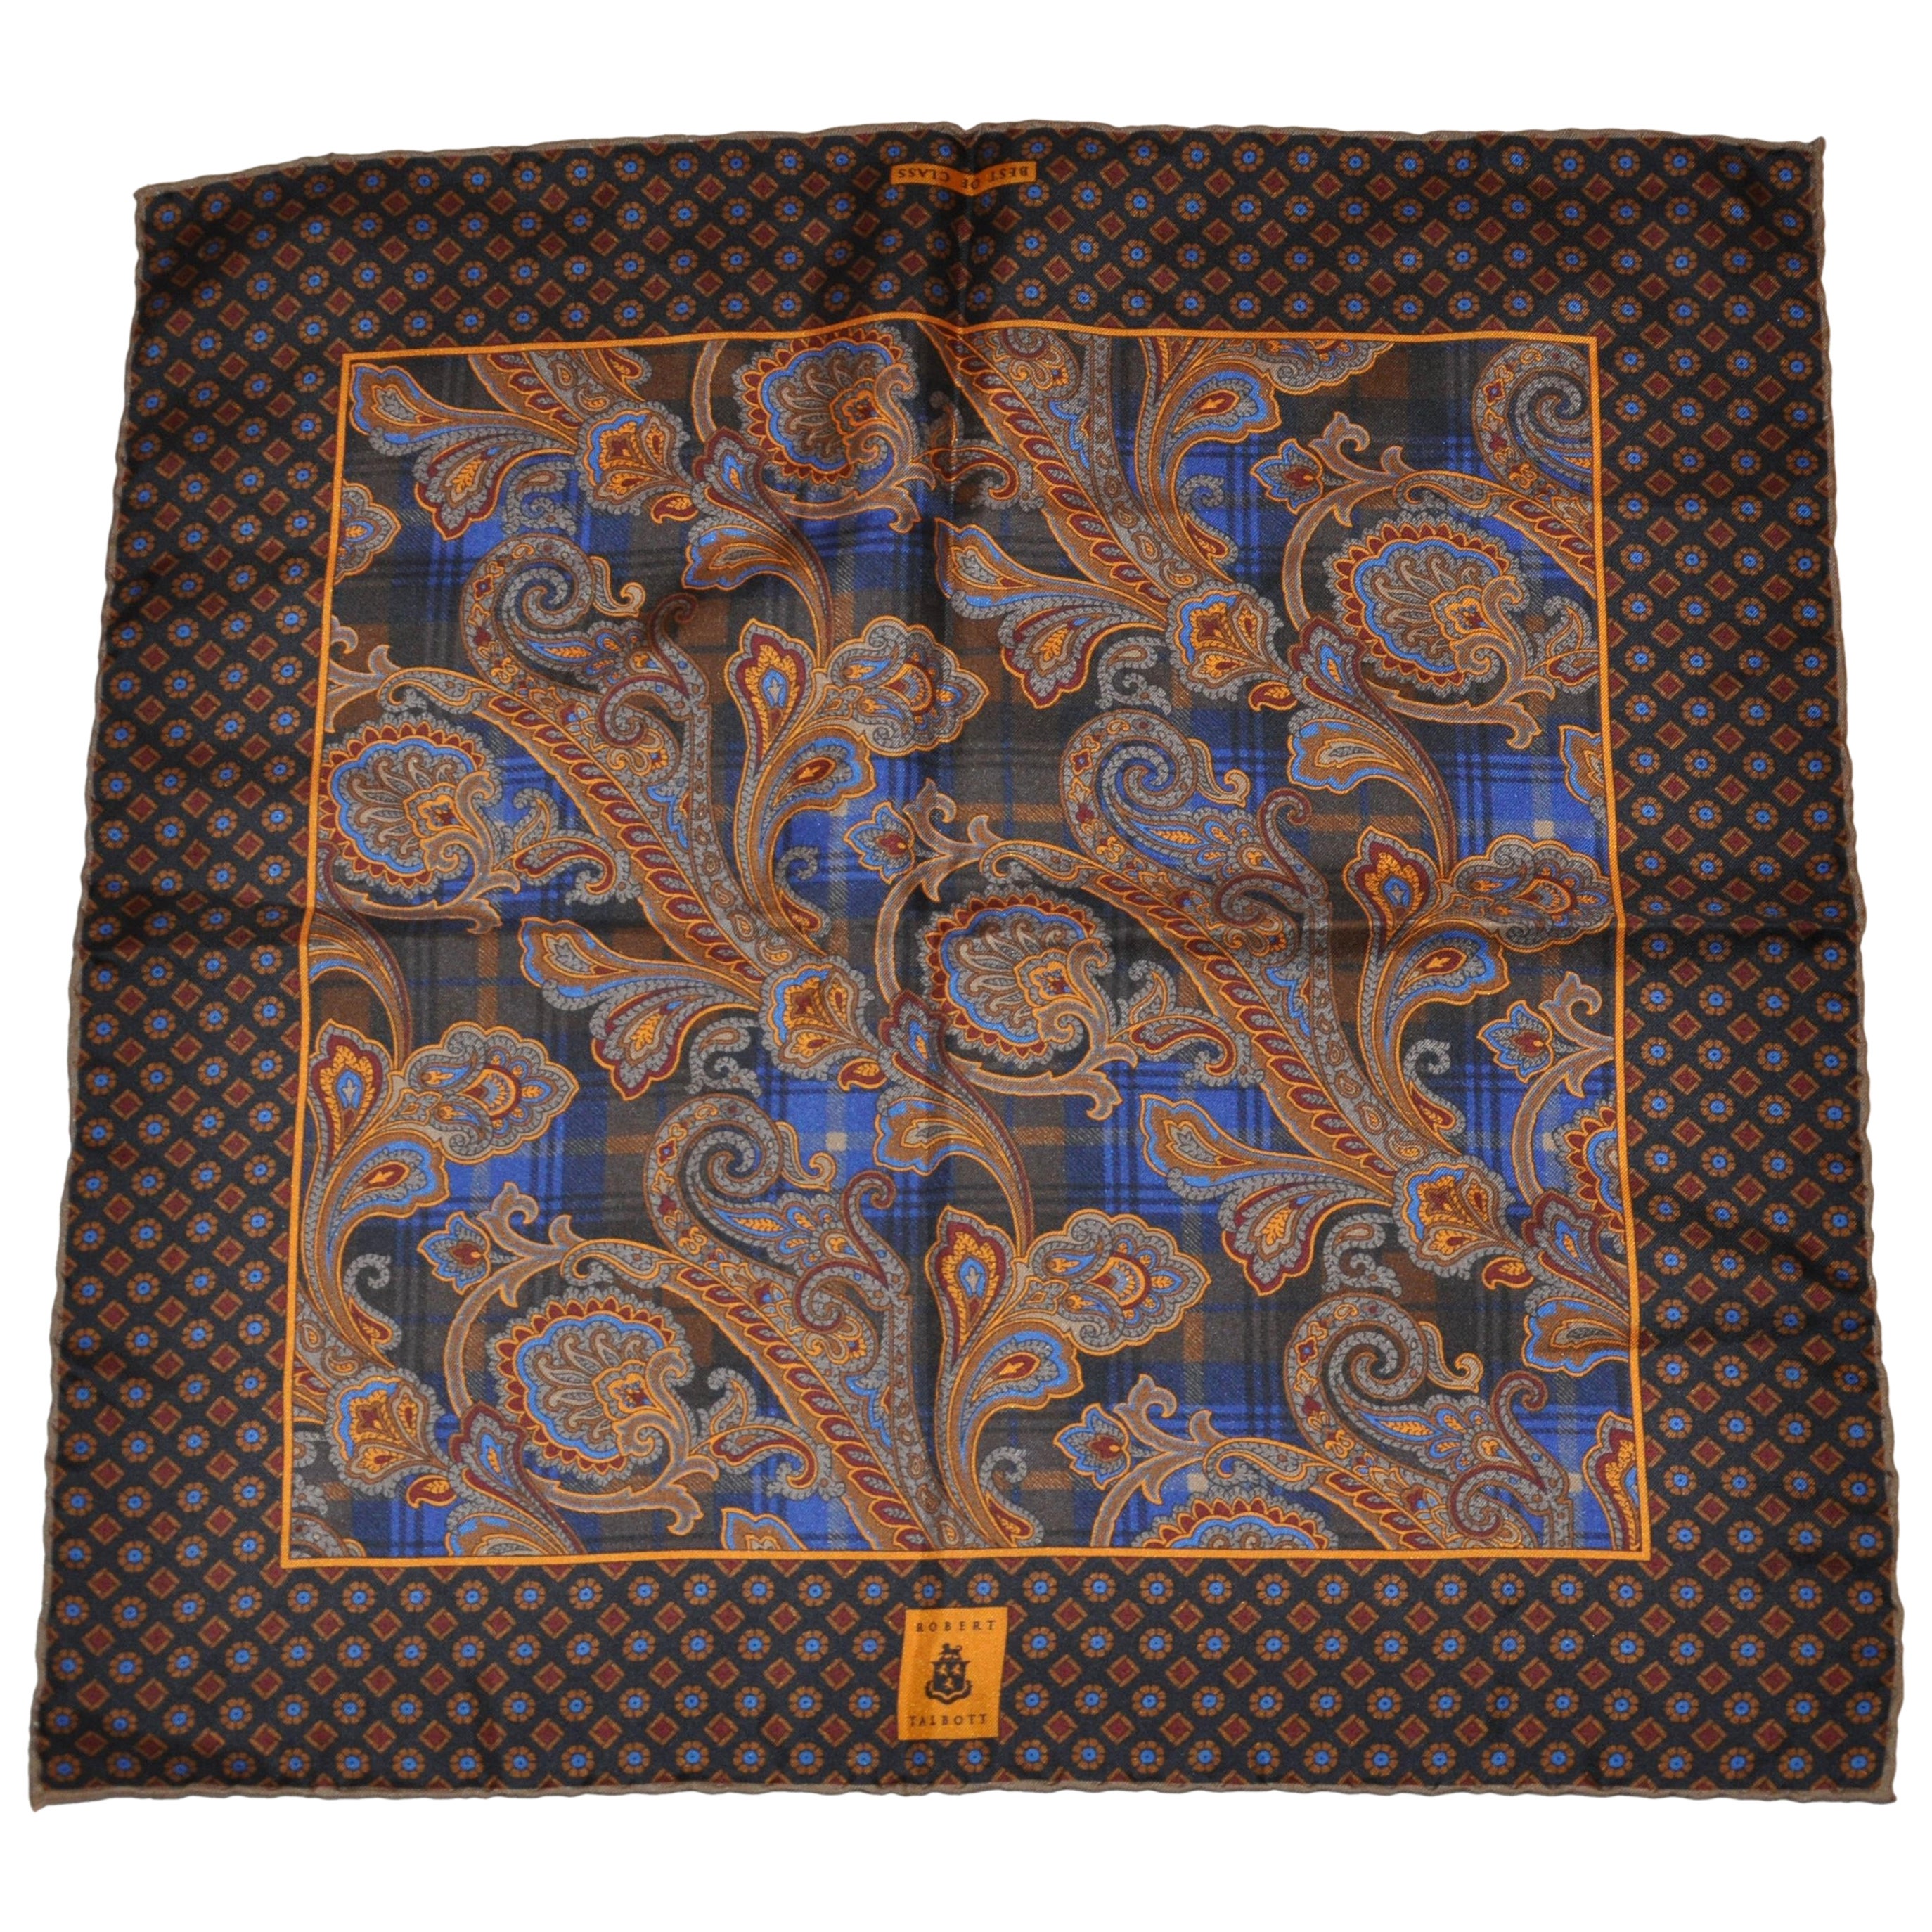 Hervorragend elegantes Paisley-Seidenhandtaschentuch von Robert Talbott, „Best of Class“